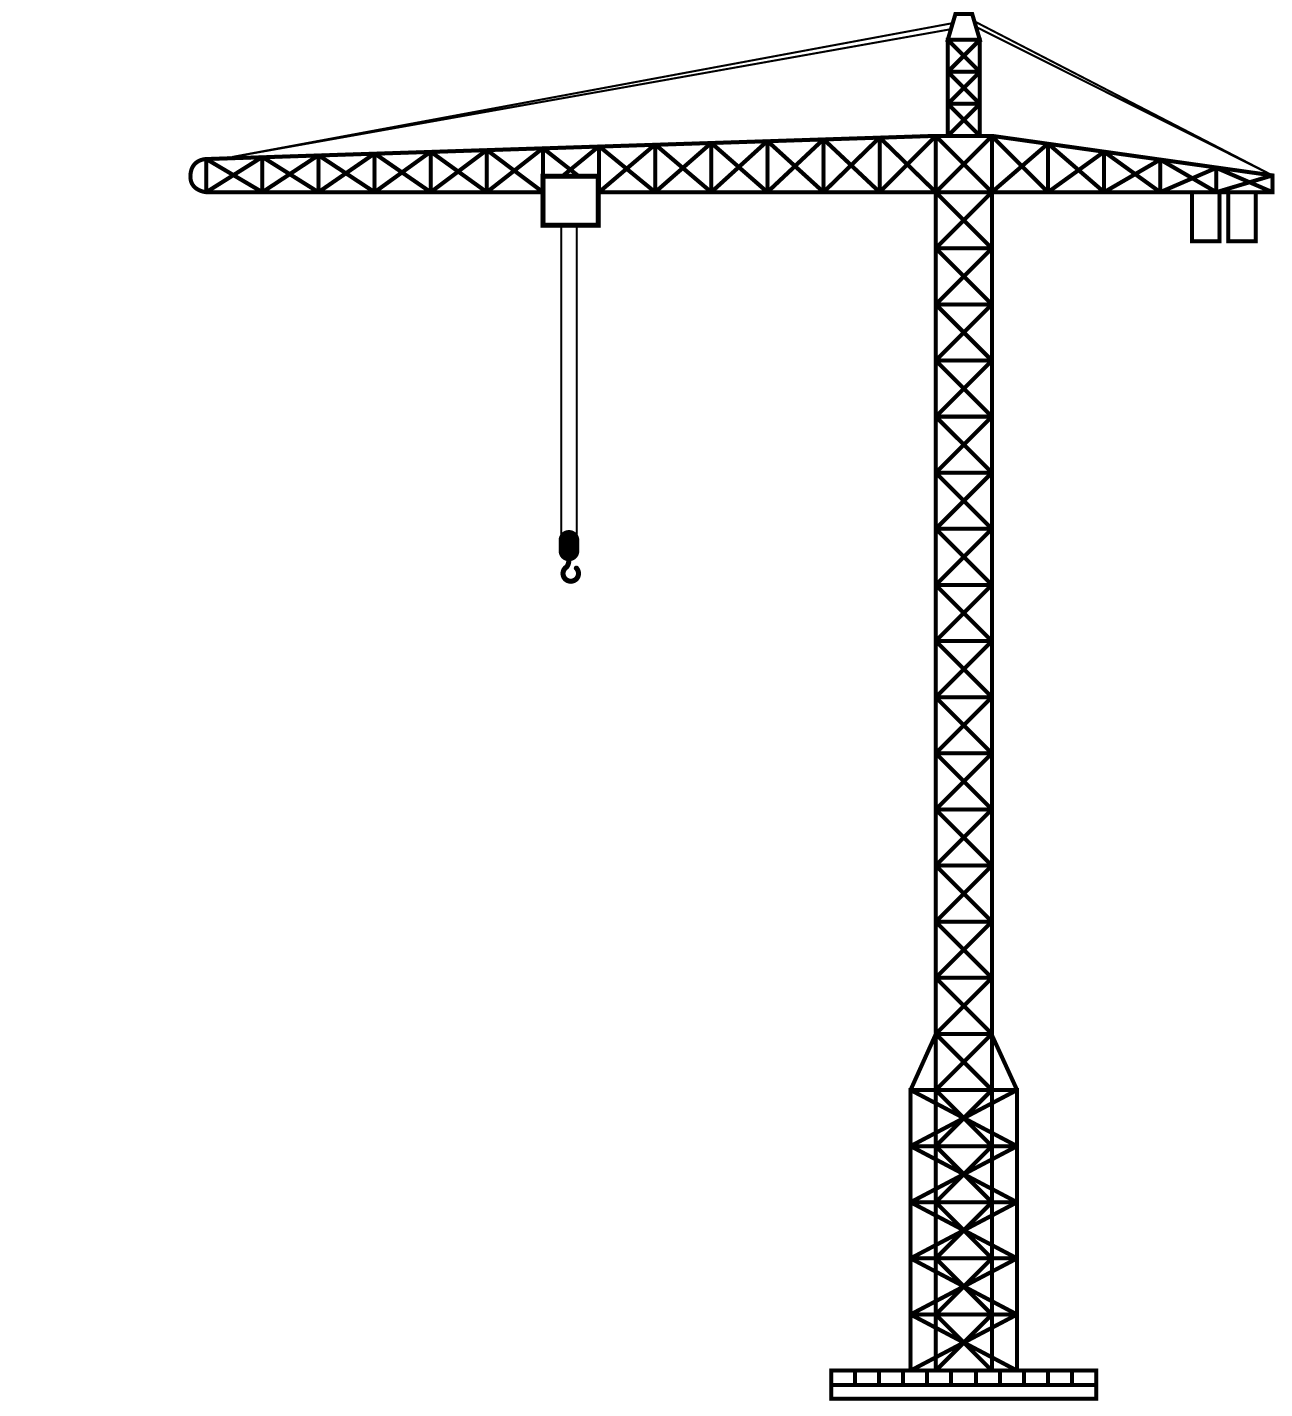 Construction clipart crane, Construction crane Transparent